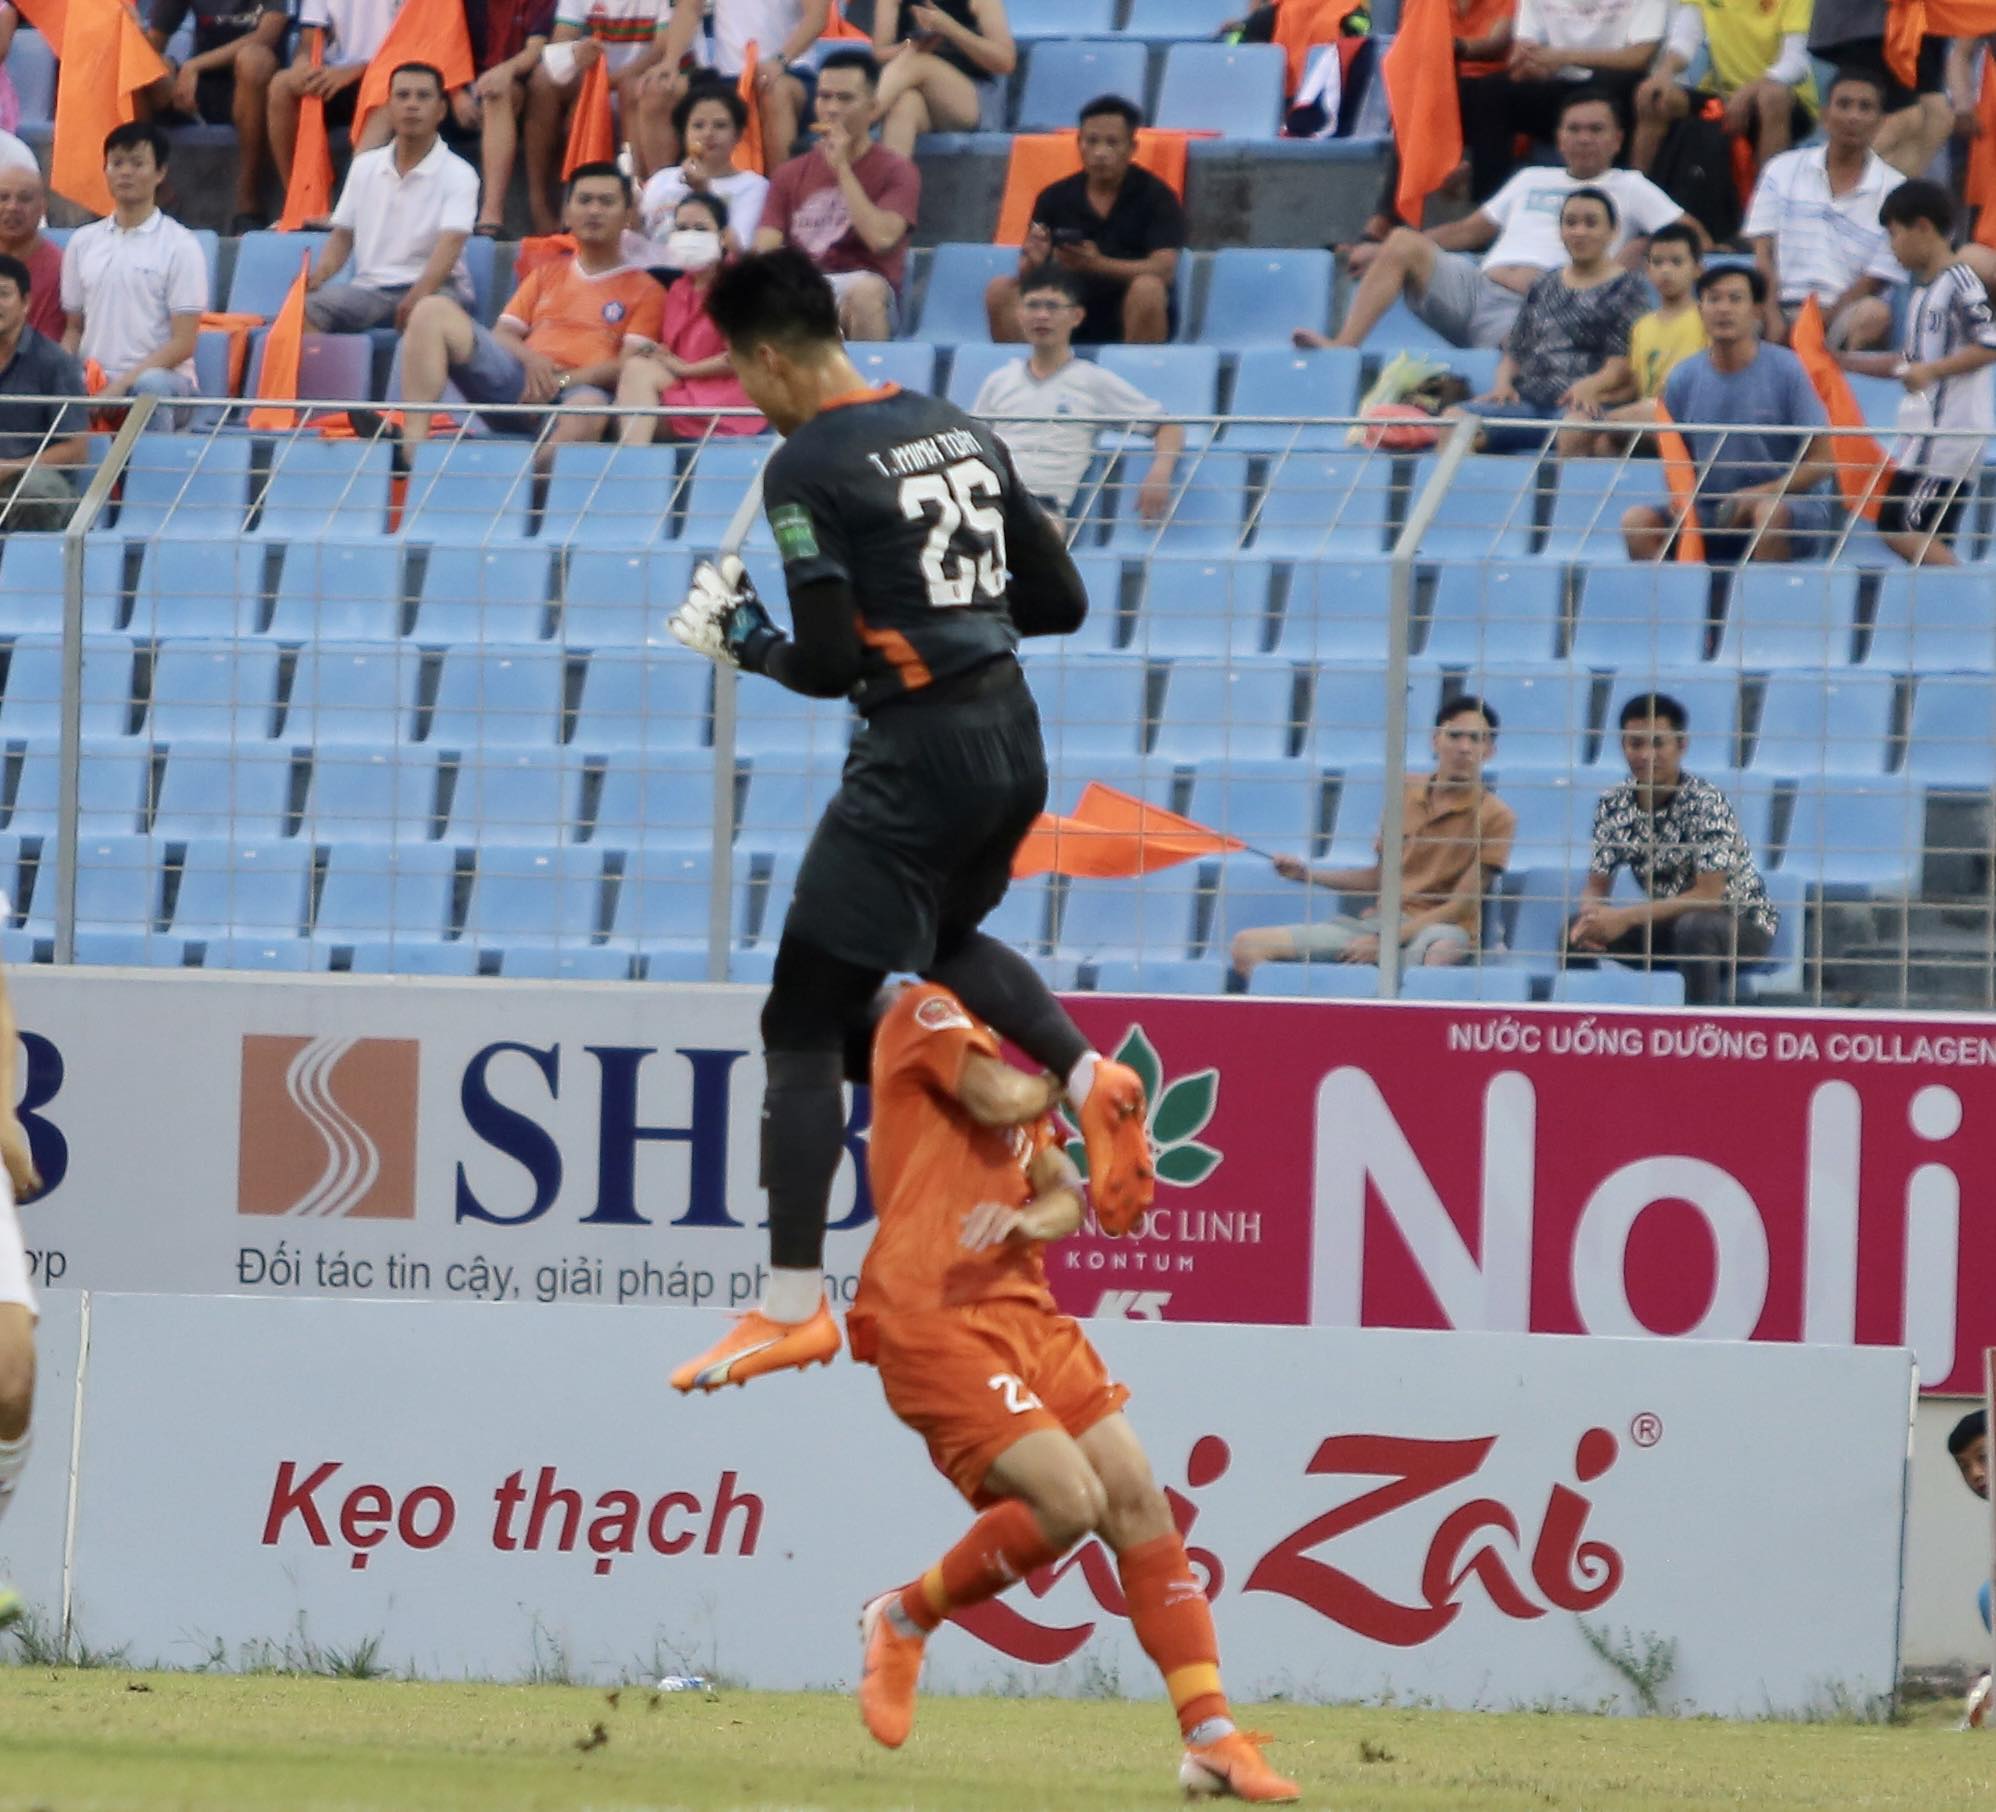 Nhận trọn đầu gối của thủ môn đội Bình Dương, cầu thủ Đà Nẵng phải đi cấp  cứu gấp